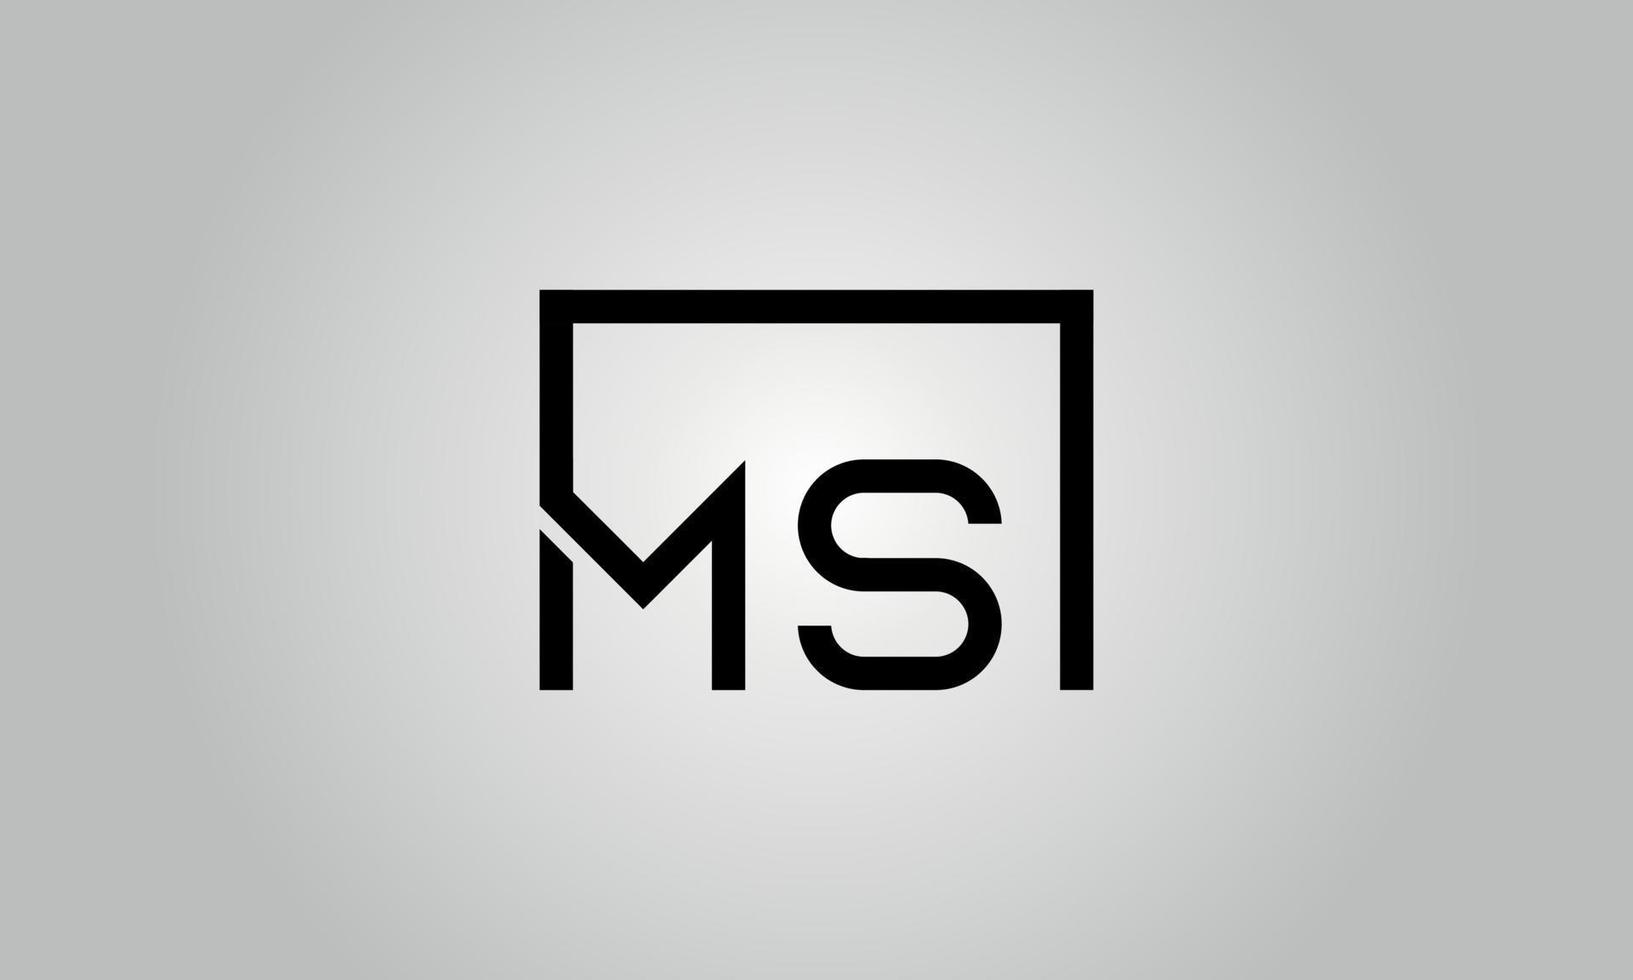 création de logo lettre ms. logo ms avec forme carrée dans le modèle vectoriel gratuit de couleurs noires.